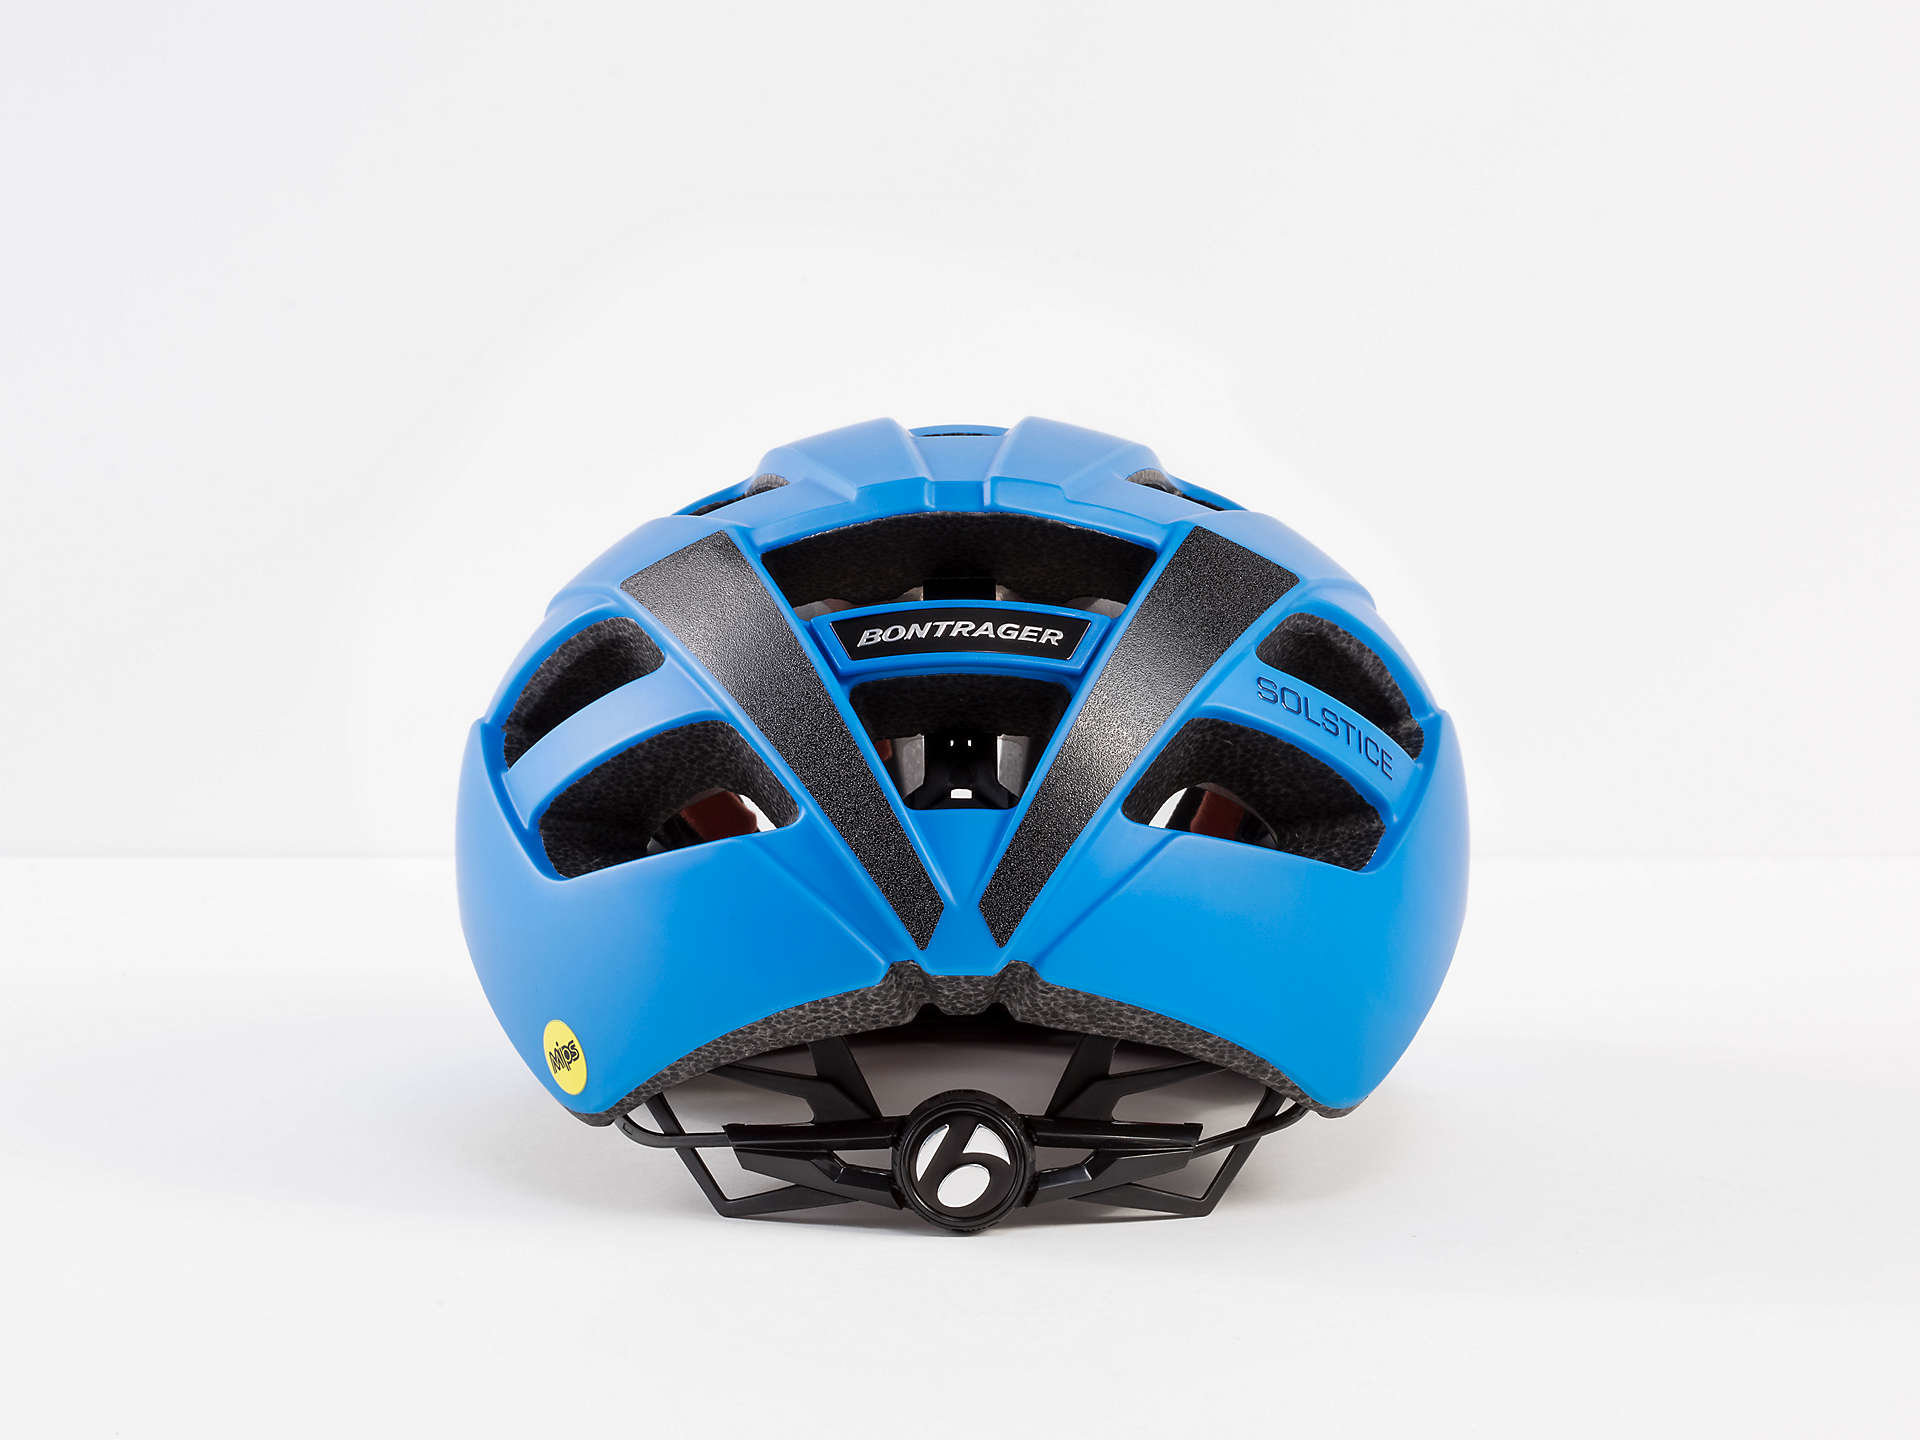 solstice mips bike helmet